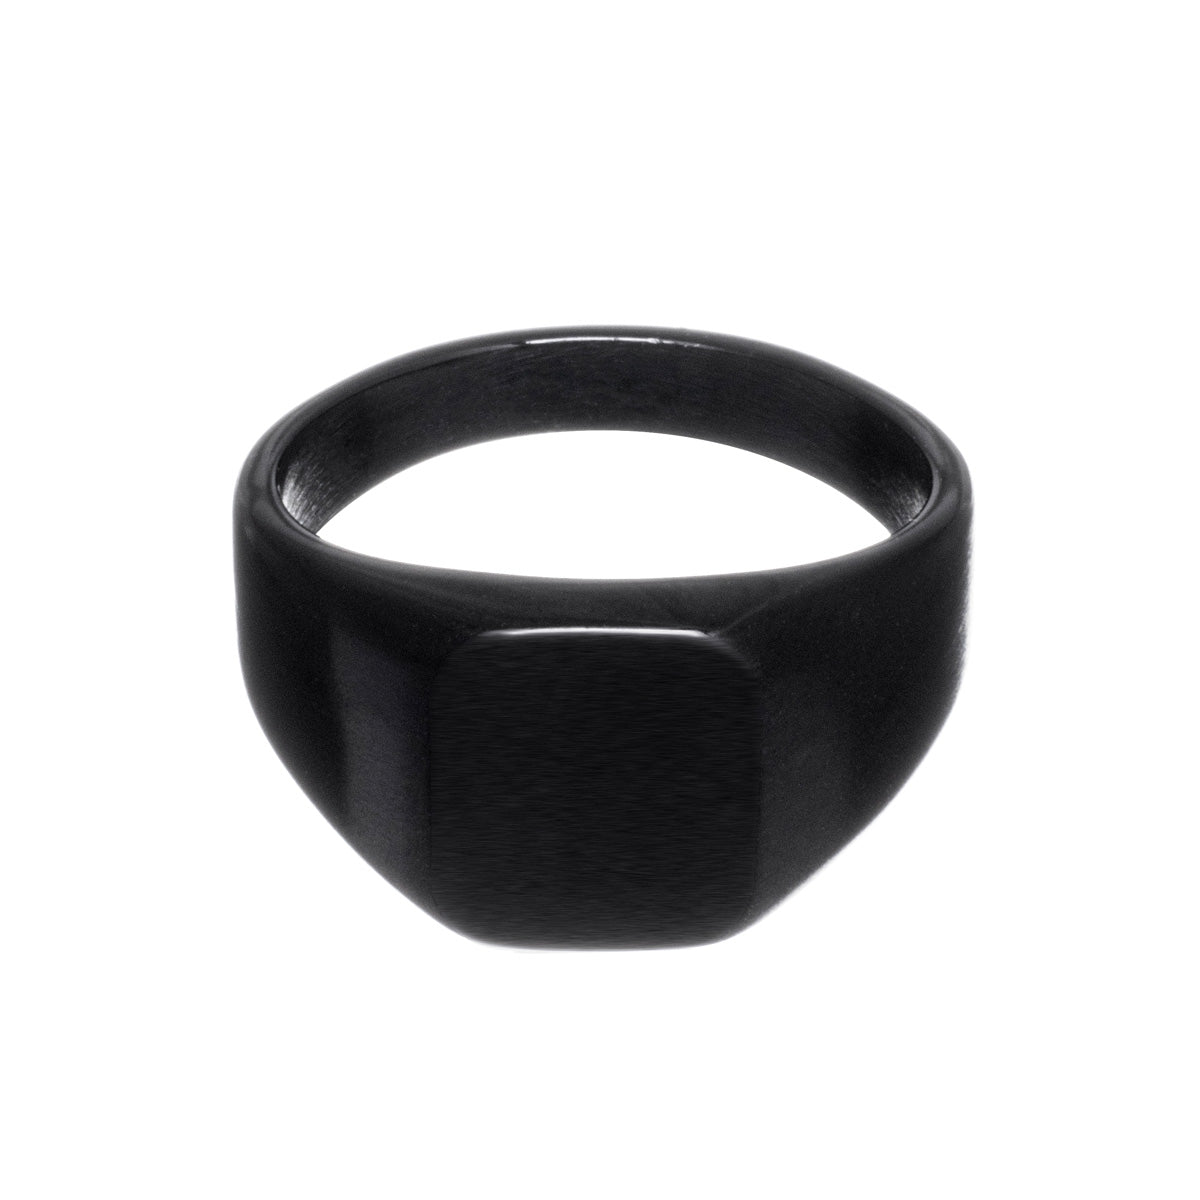 Matt black wedding ring steel ring